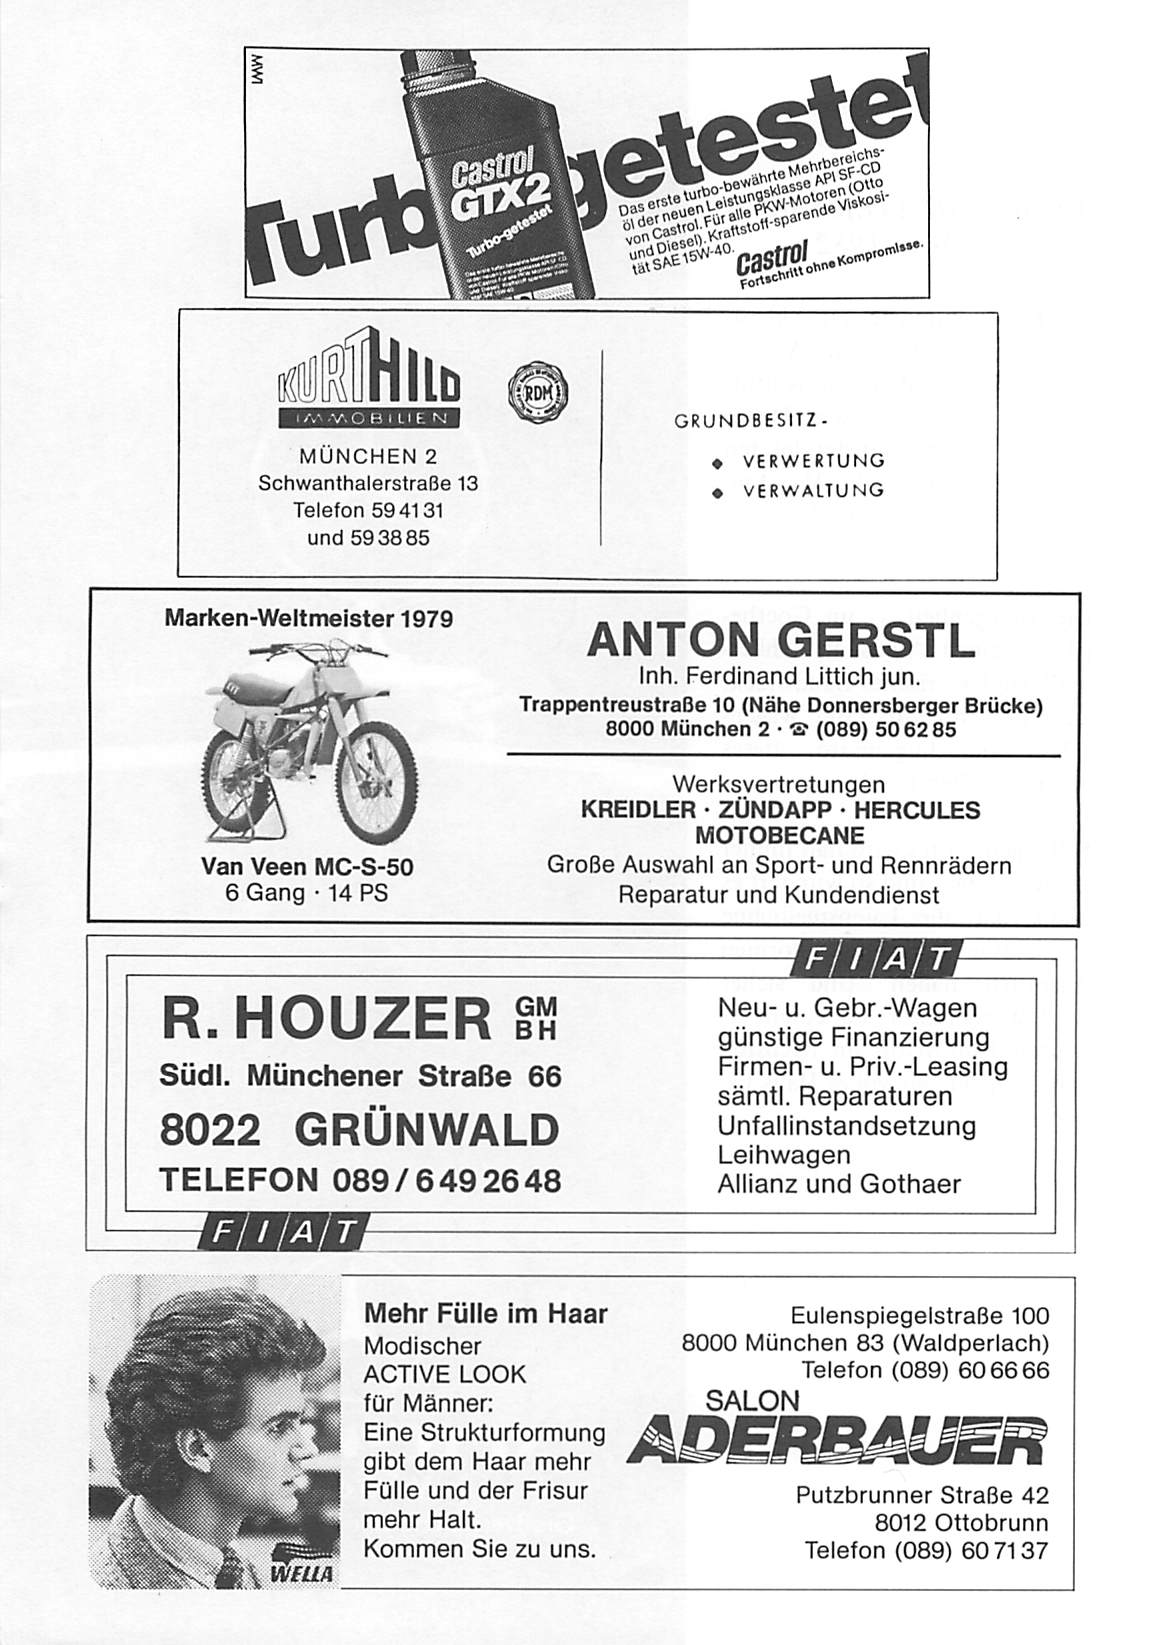 r^wkur SBÖS BÖ* GRUNDBESITZ- MÜNCHEN 2 Schwanthalerstraße 13 Telefon 594131 und 593885 VERWERTUNG VERWALTUNG Marken-Weltmeister 1979 ANTON GERSTL Inh. Ferdinand Littich jun.